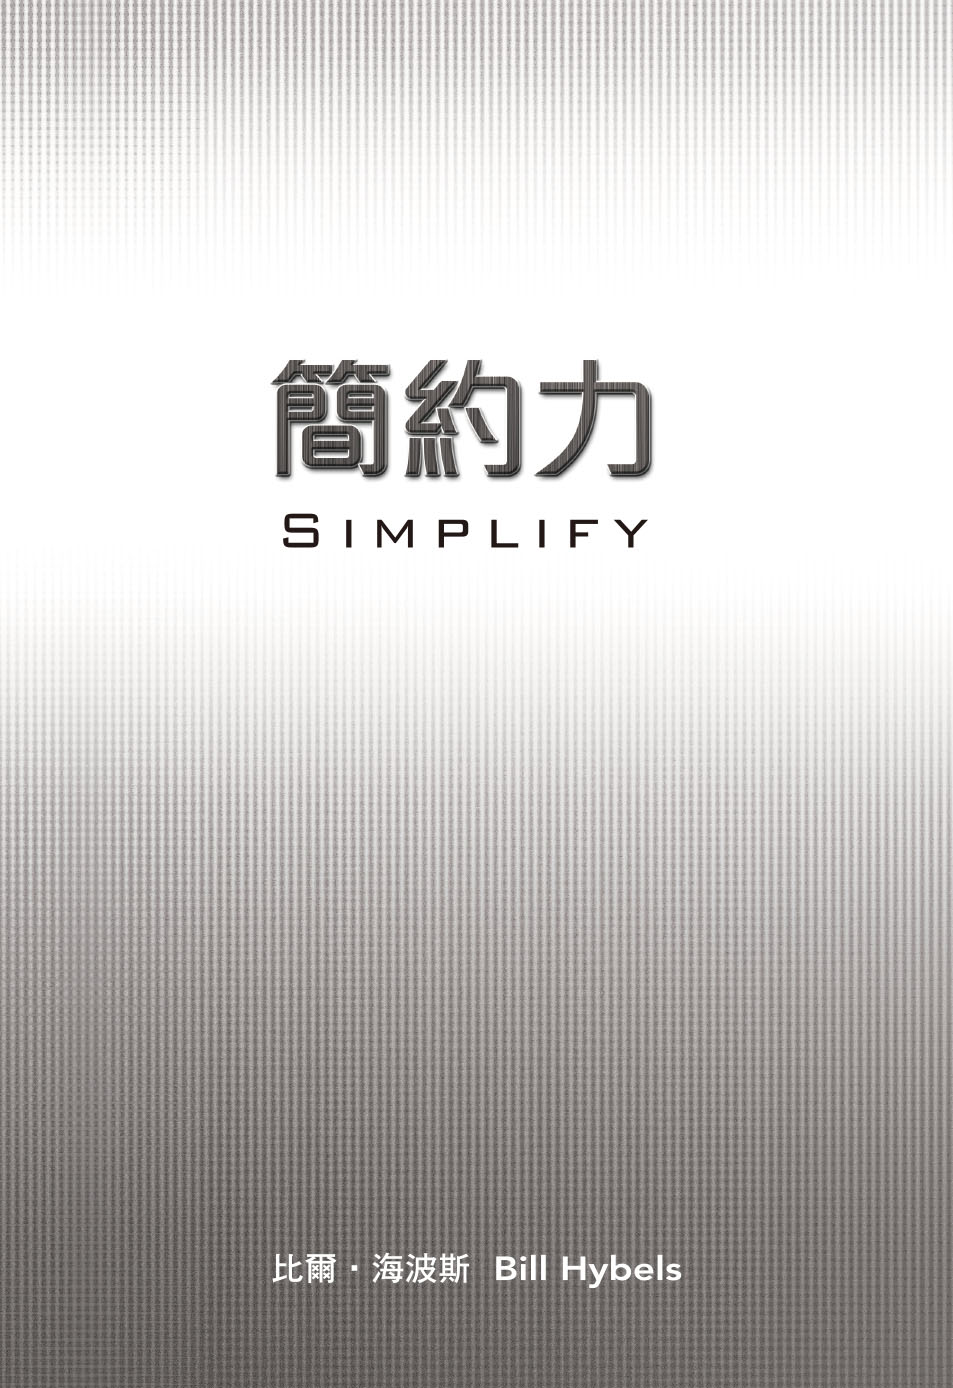 ²O Simplify